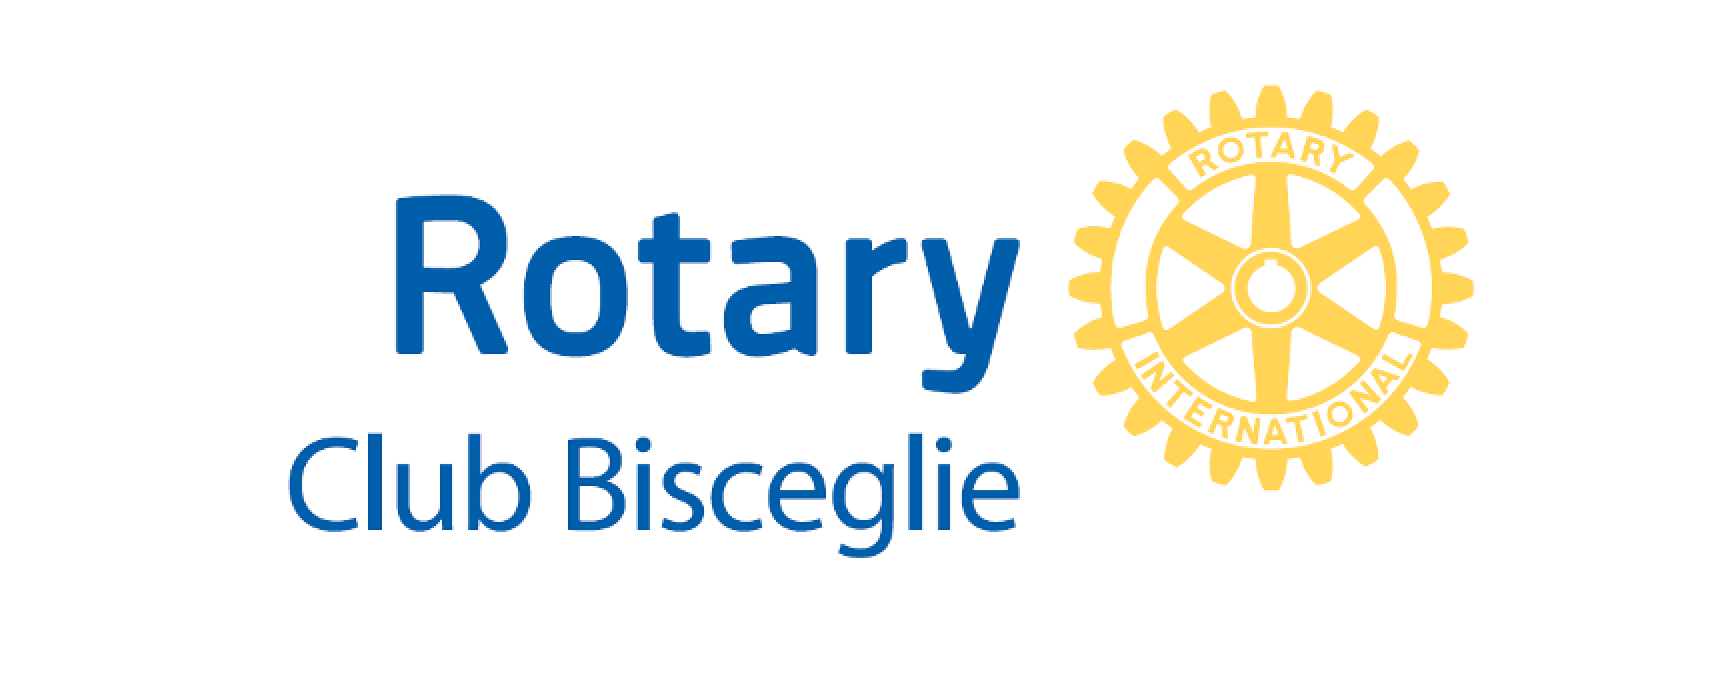 Rotary Club Bisceglie, si rinnova l’appuntamento con la “Festa della Scuola”